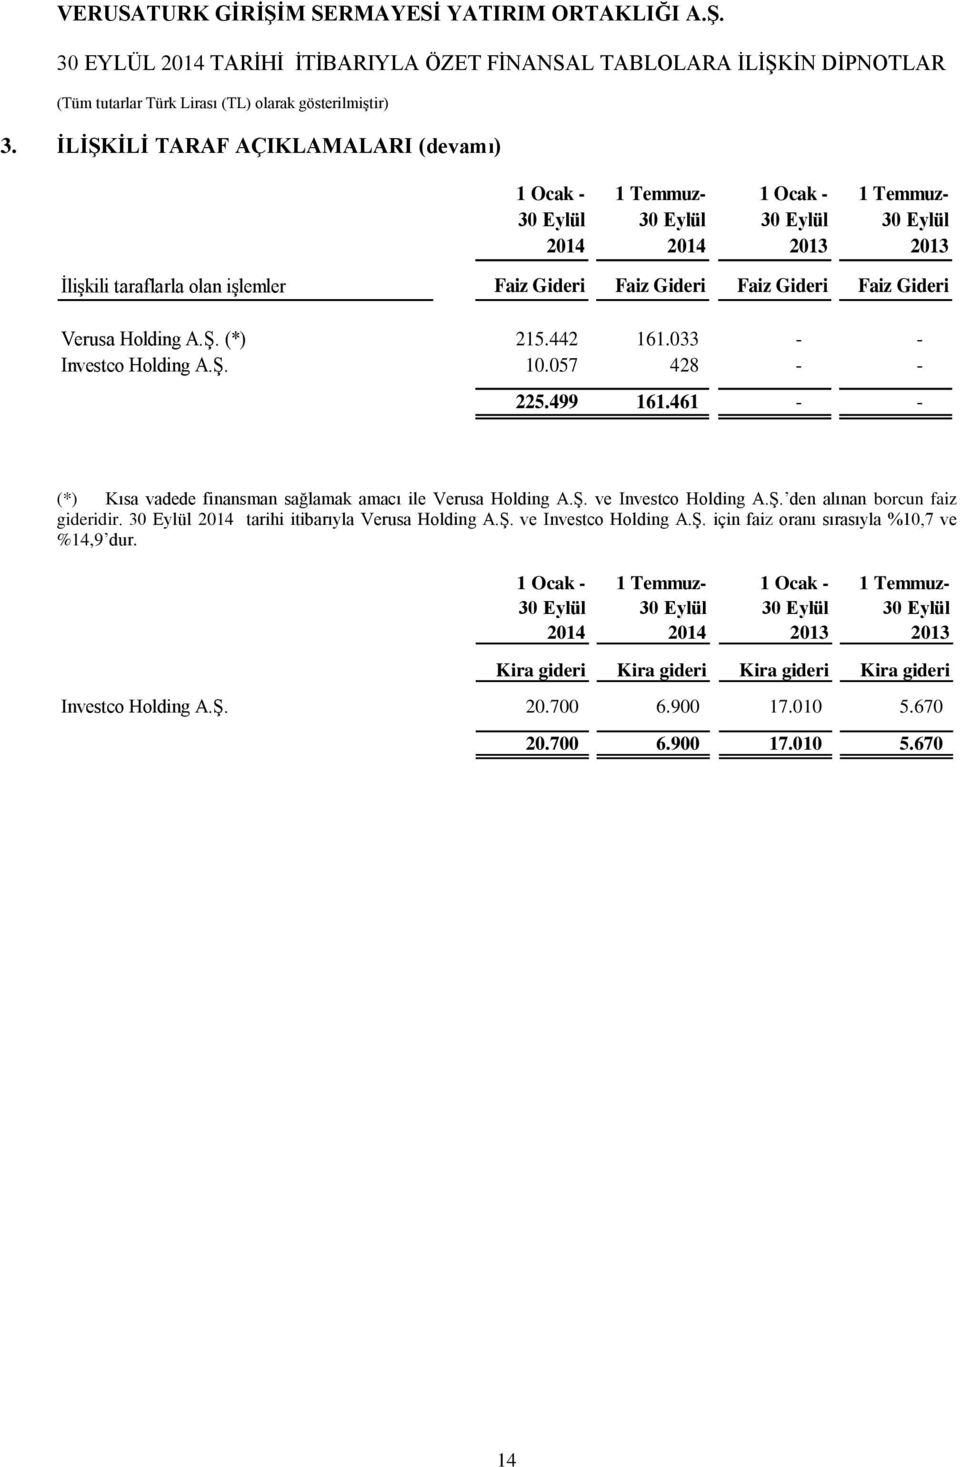 Ş. den alınan borcun faiz gideridir. 30 Eylül 2014 tarihi itibarıyla Verusa Holding A.Ş. ve Investco Holding A.Ş. için faiz oranı sırasıyla %10,7 ve %14,9 dur.